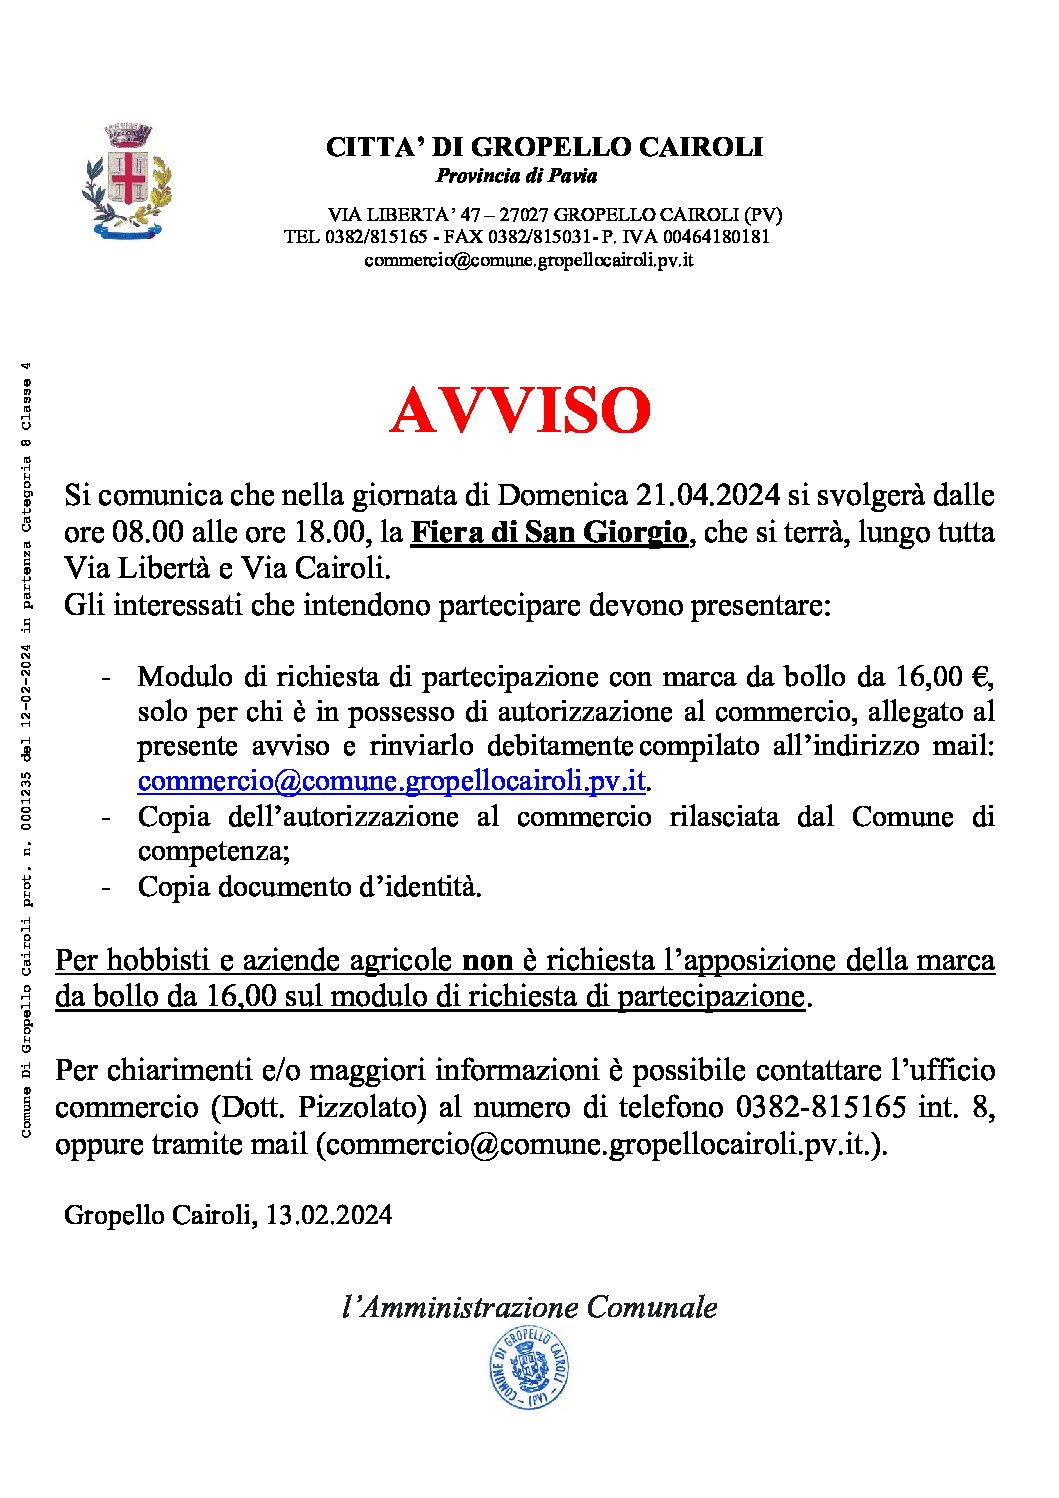 AVVISO: ISCRIZIONE FIERA DI SAN GIORGIO IN DATA 21.04.2024.